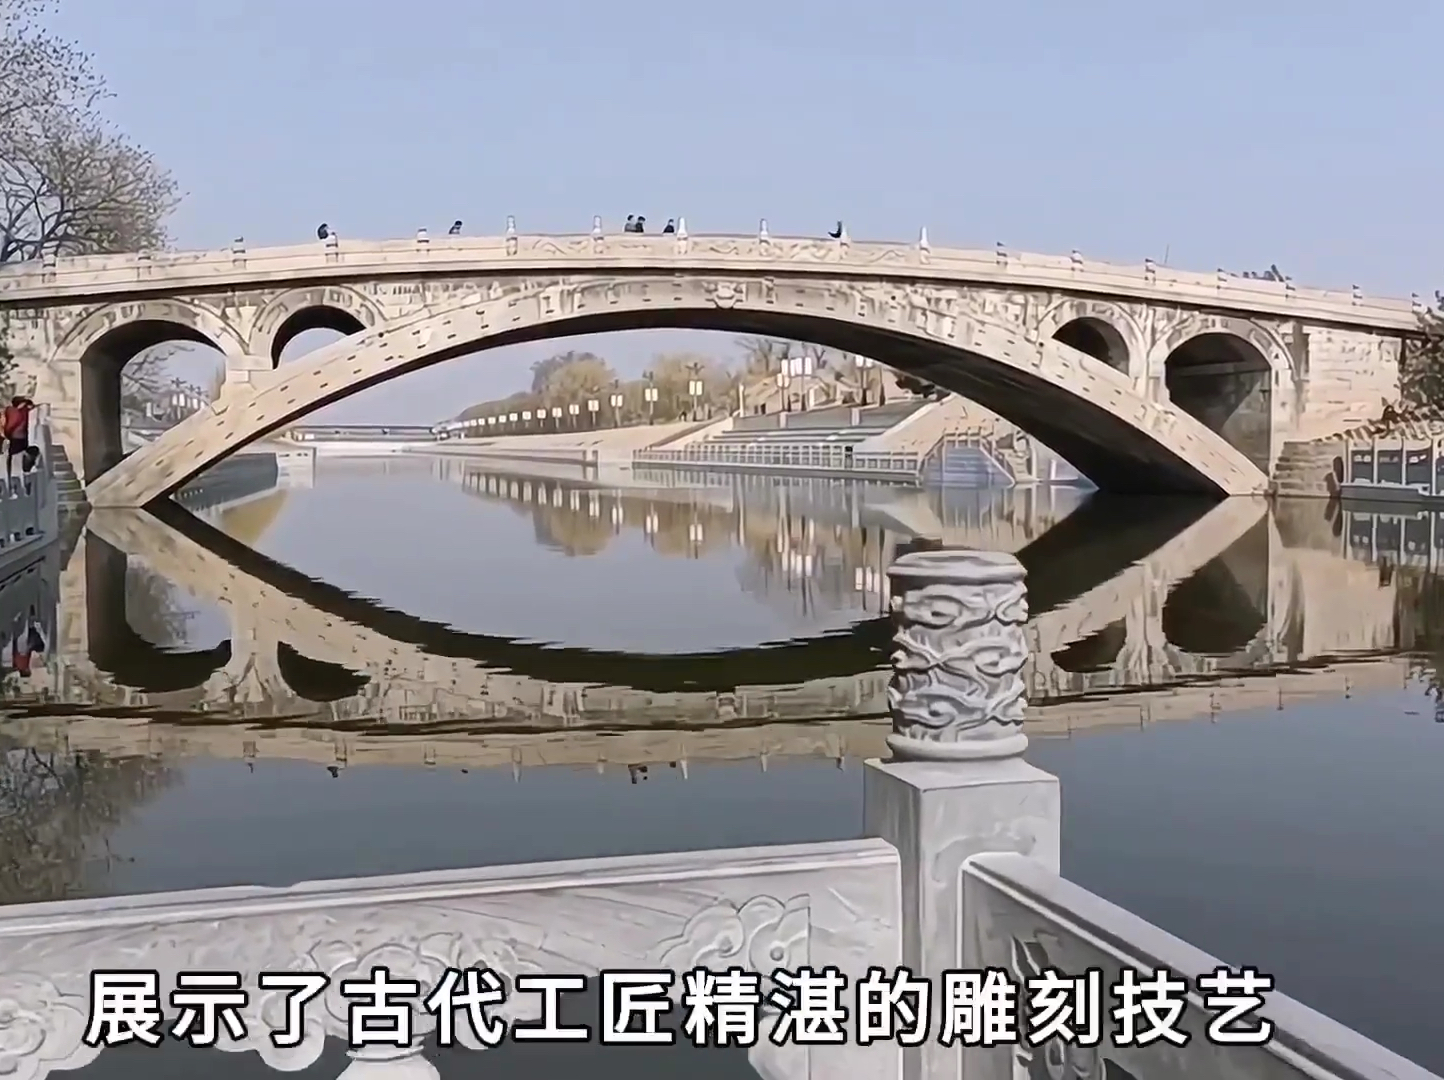 赵州桥，千年古迹，雄伟壮观，气势磅礴，是我国古建筑技艺的杰出代表。它横跨于清风岭上，四季风景无限，如